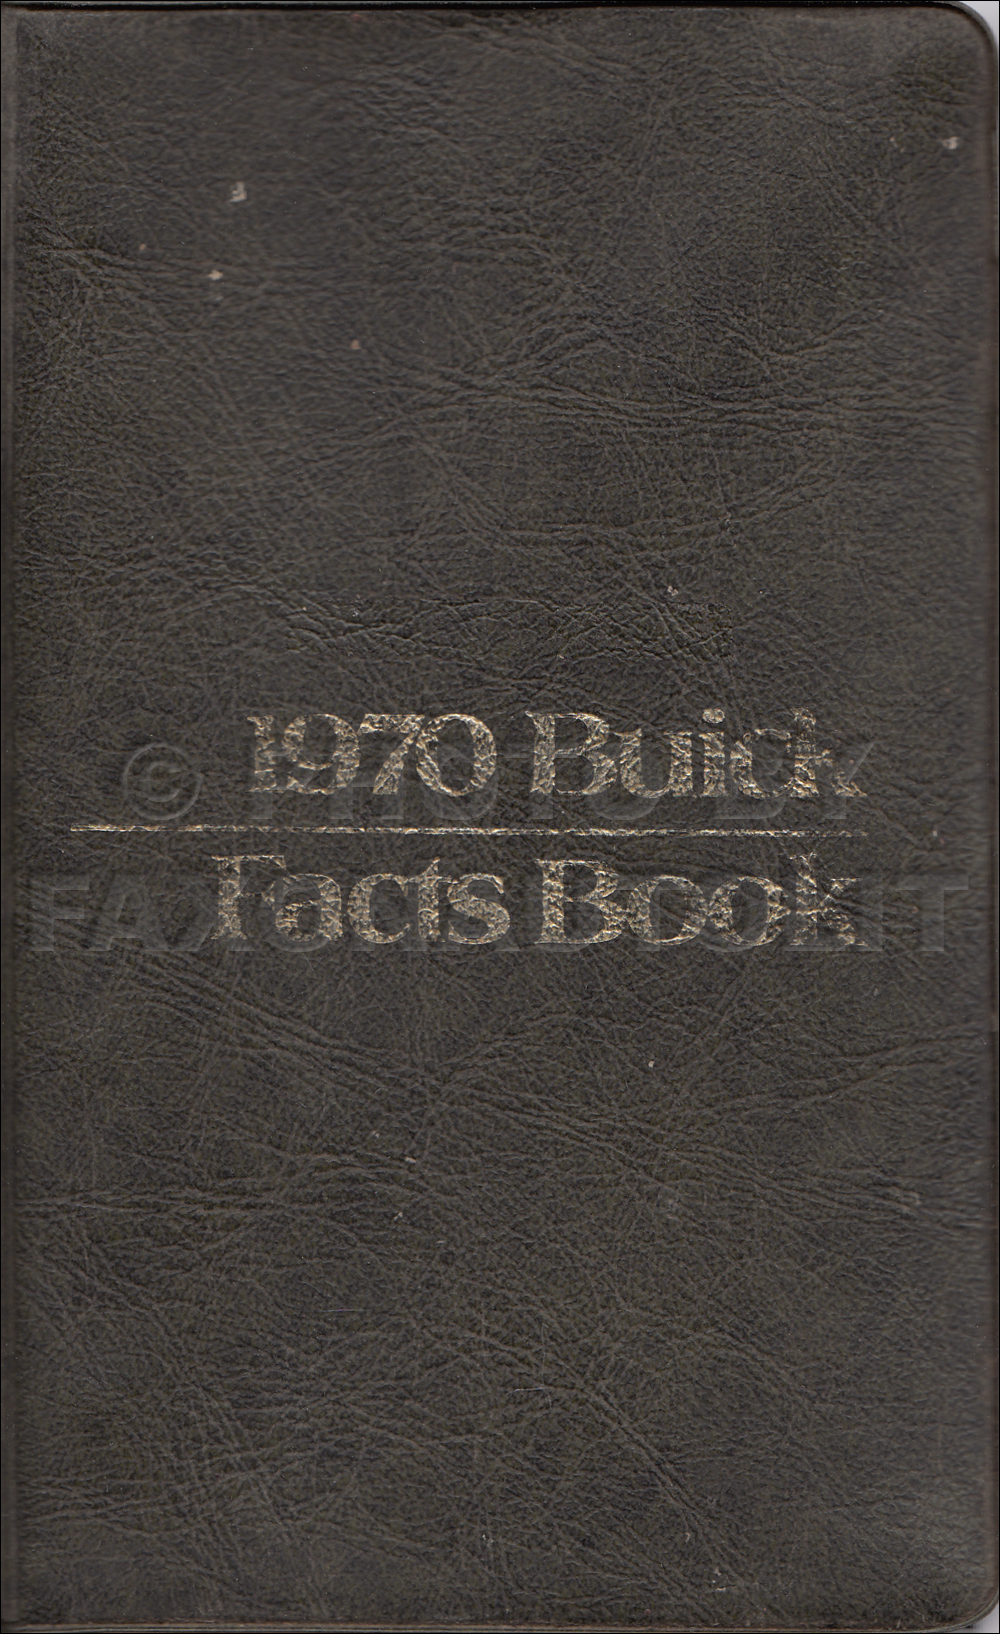 1970 Buick Facts Book Original